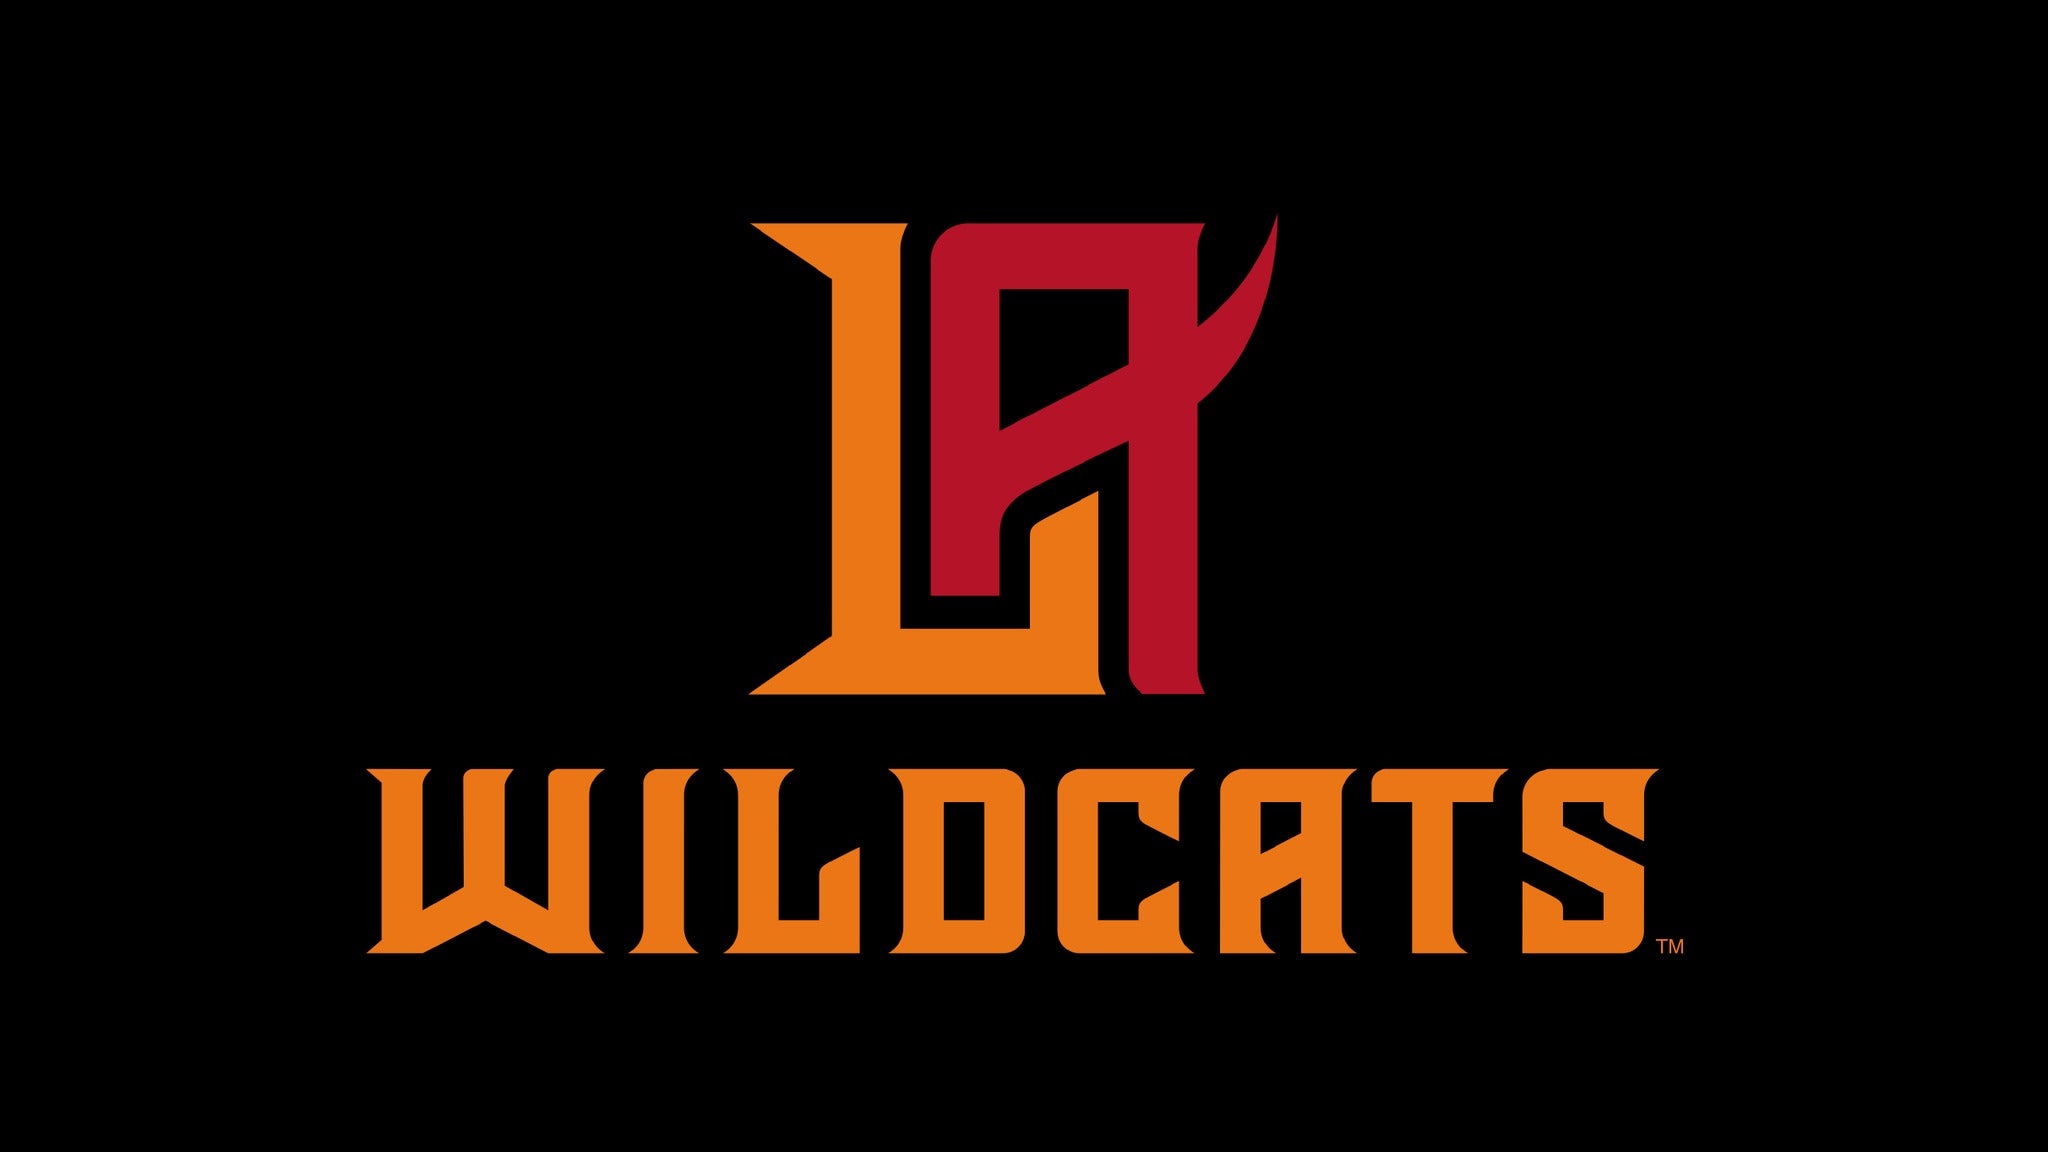 Los Angeles Wildcats presale information on freepresalepasswords.com